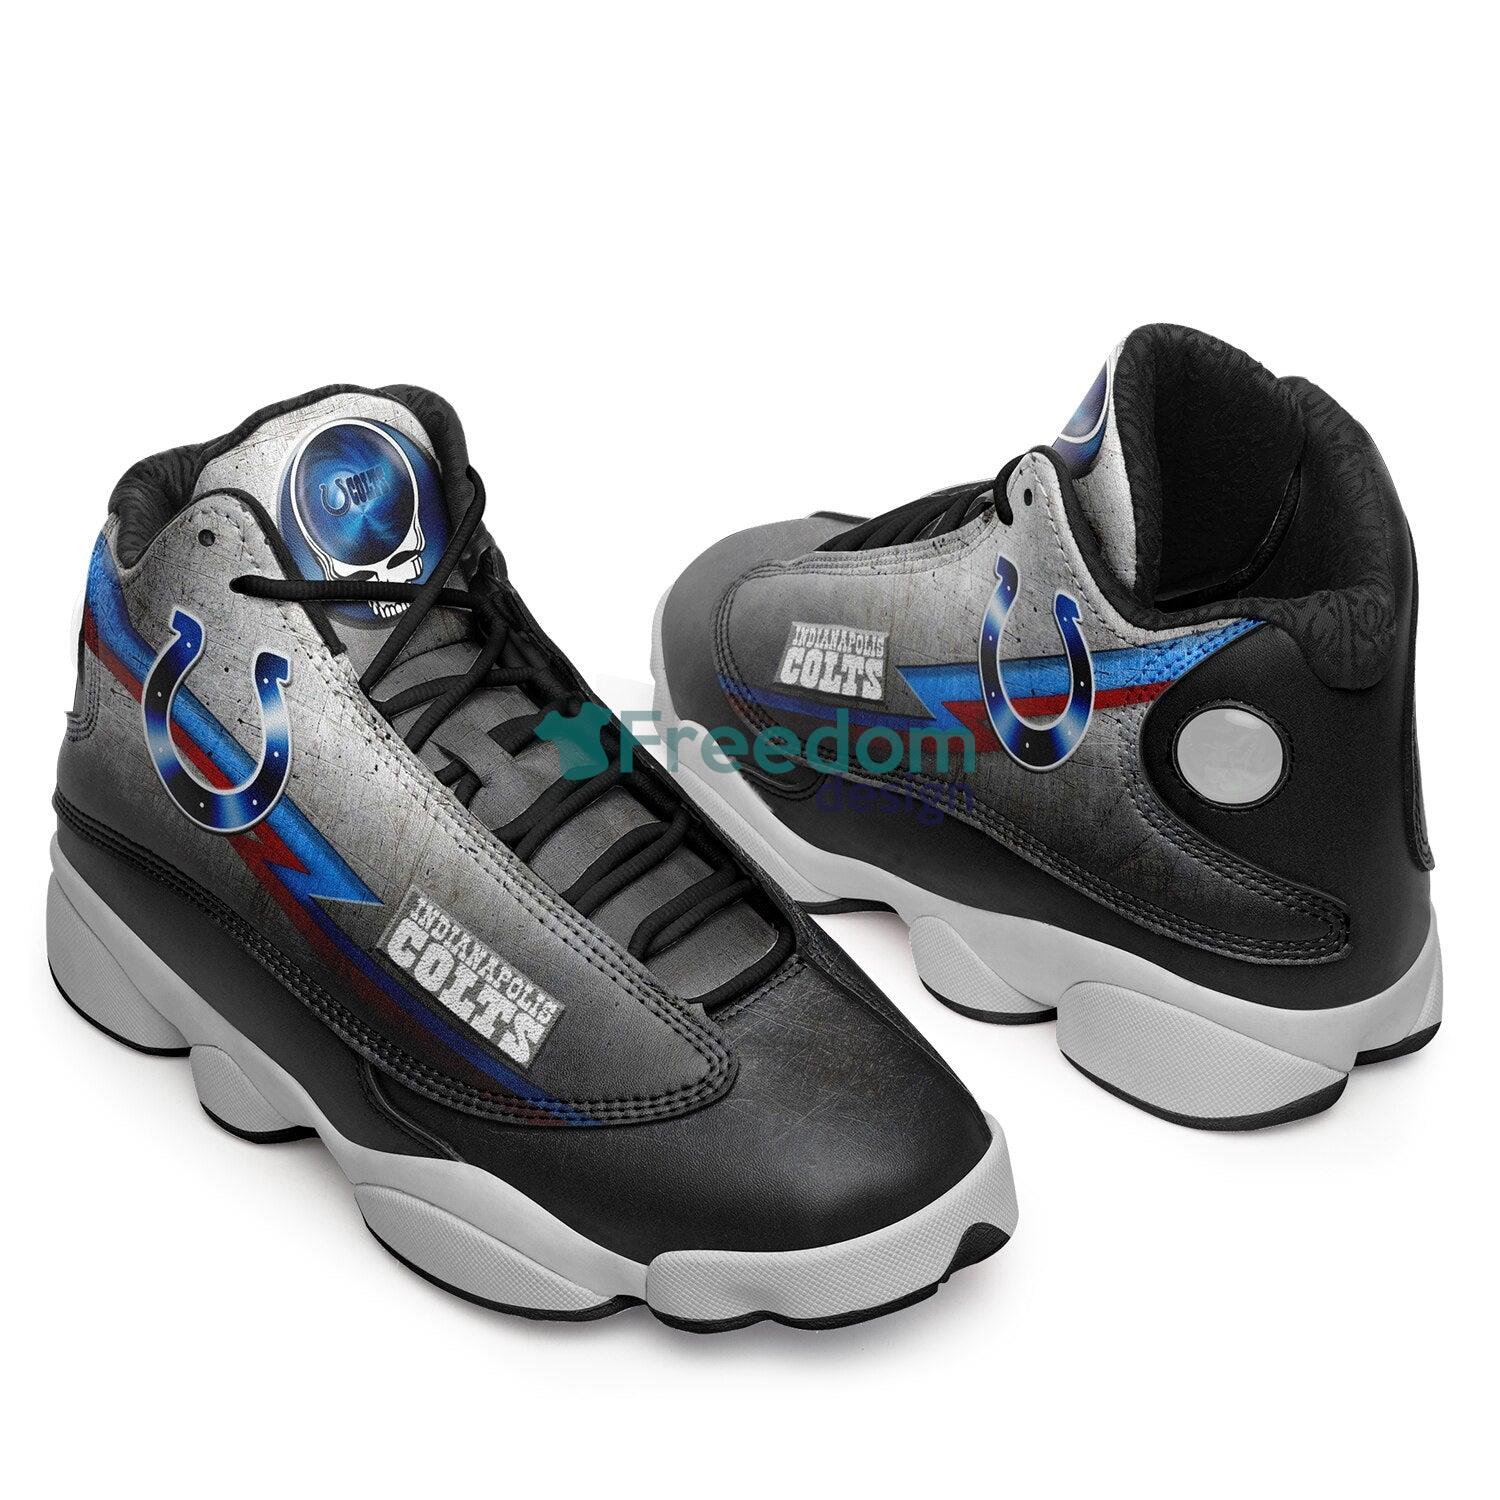 Indianapolis Colts Fans Air Jordan 13 Sneaker Shoes For Fans